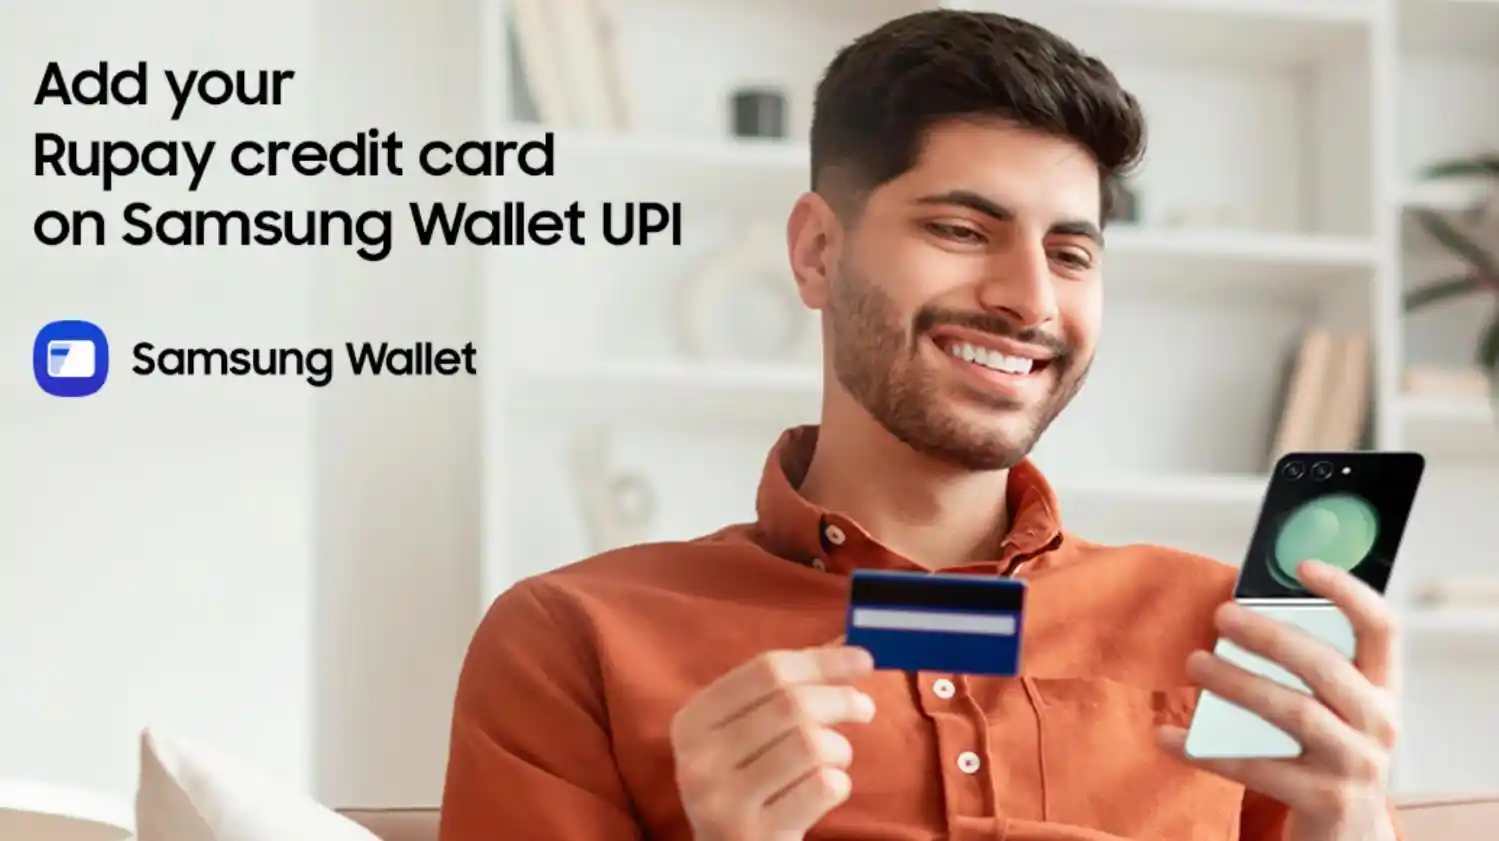 三星Samsung Pass在印度推出新功能 支持UPI的RuPay信用卡移动支付